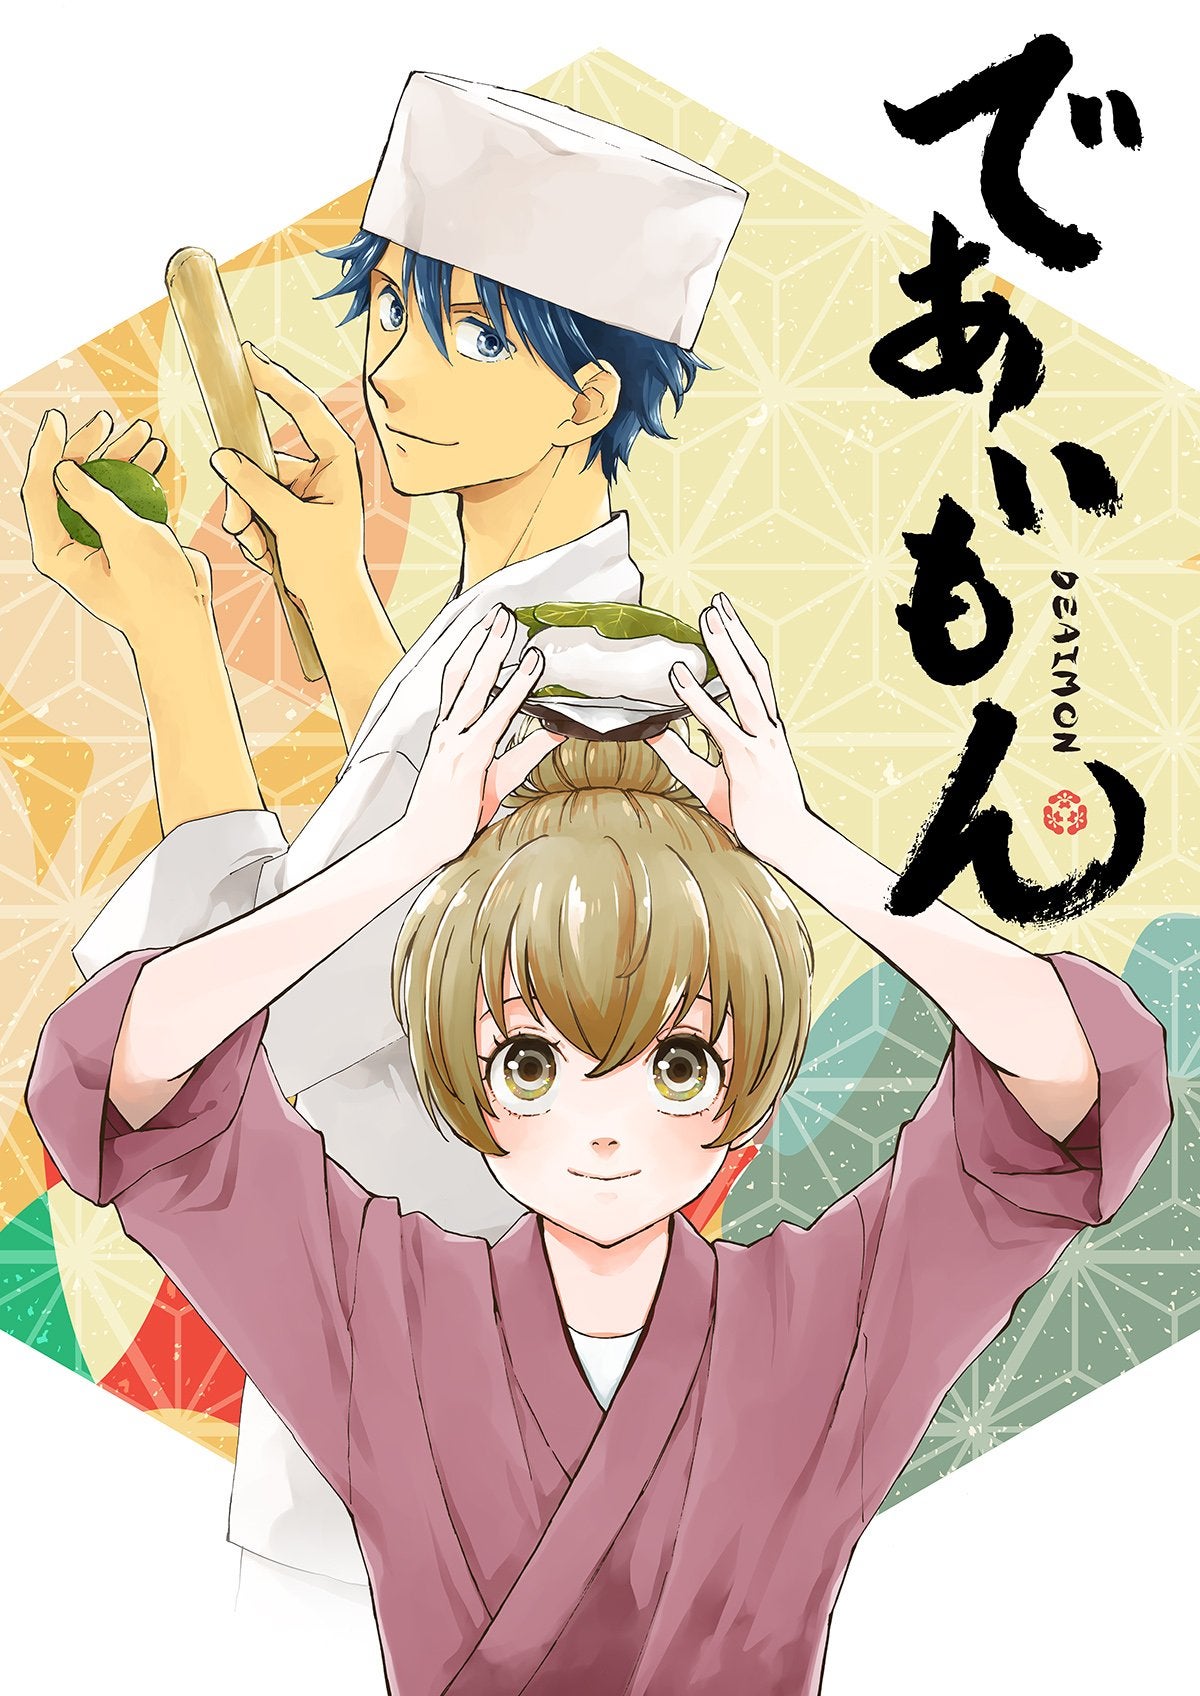 Inuyasha hanyo no yashahime 2, capítulo 17 online sub español: dónde ver el  estreno del nuevo capítulo del anime, Manga, México, Japón, Animes